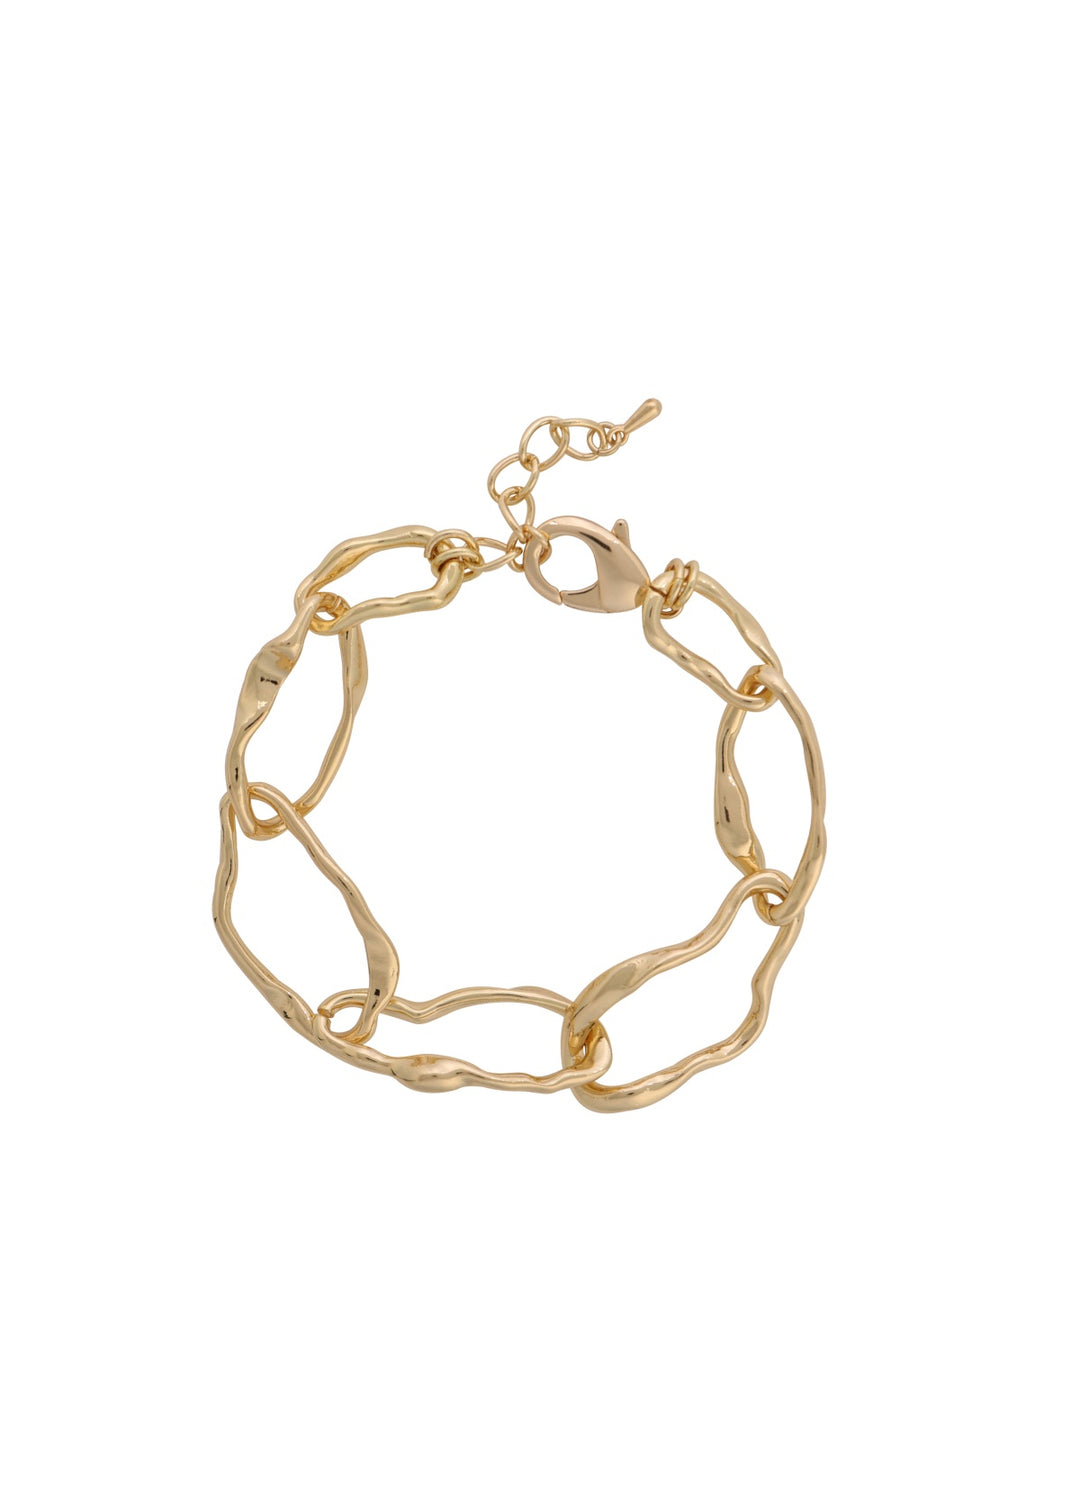 Merx - Hammered Chain Bracelet